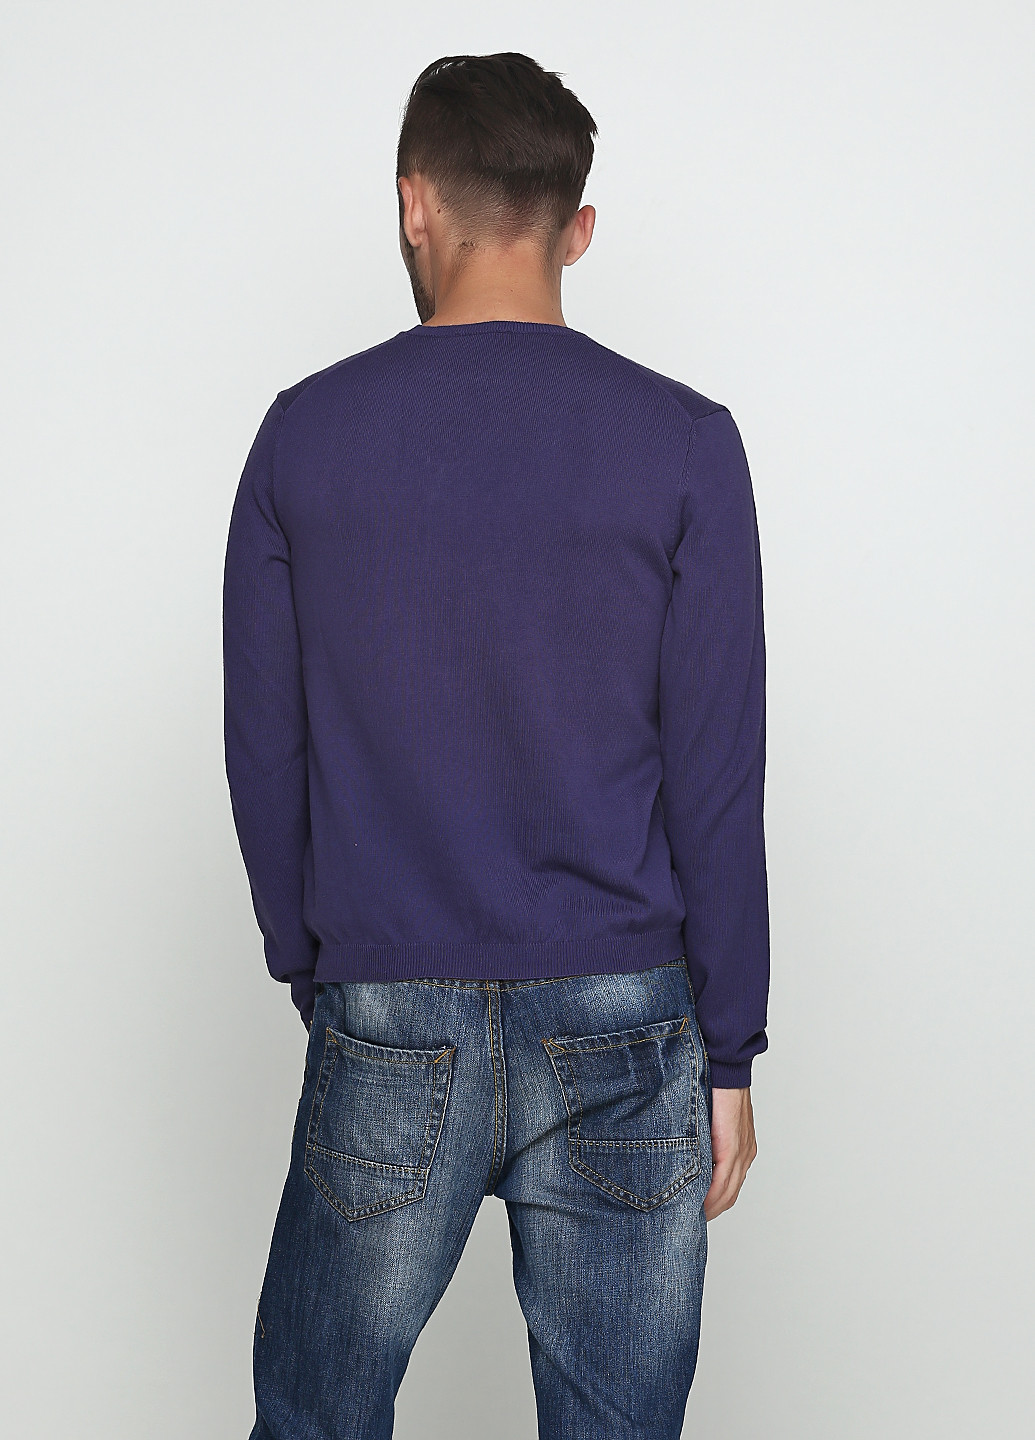 Фиолетовый демисезонный пуловер пуловер Sisley